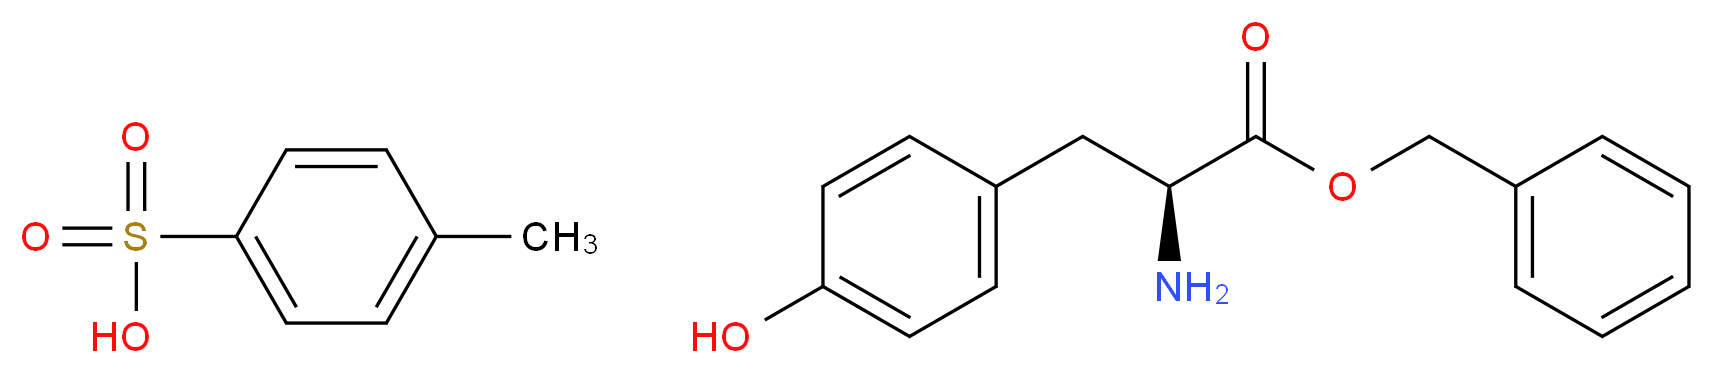 L-Tyrosine benzyl ester p-toluenesulfonate salt_Molecular_structure_CAS_53587-11-4)